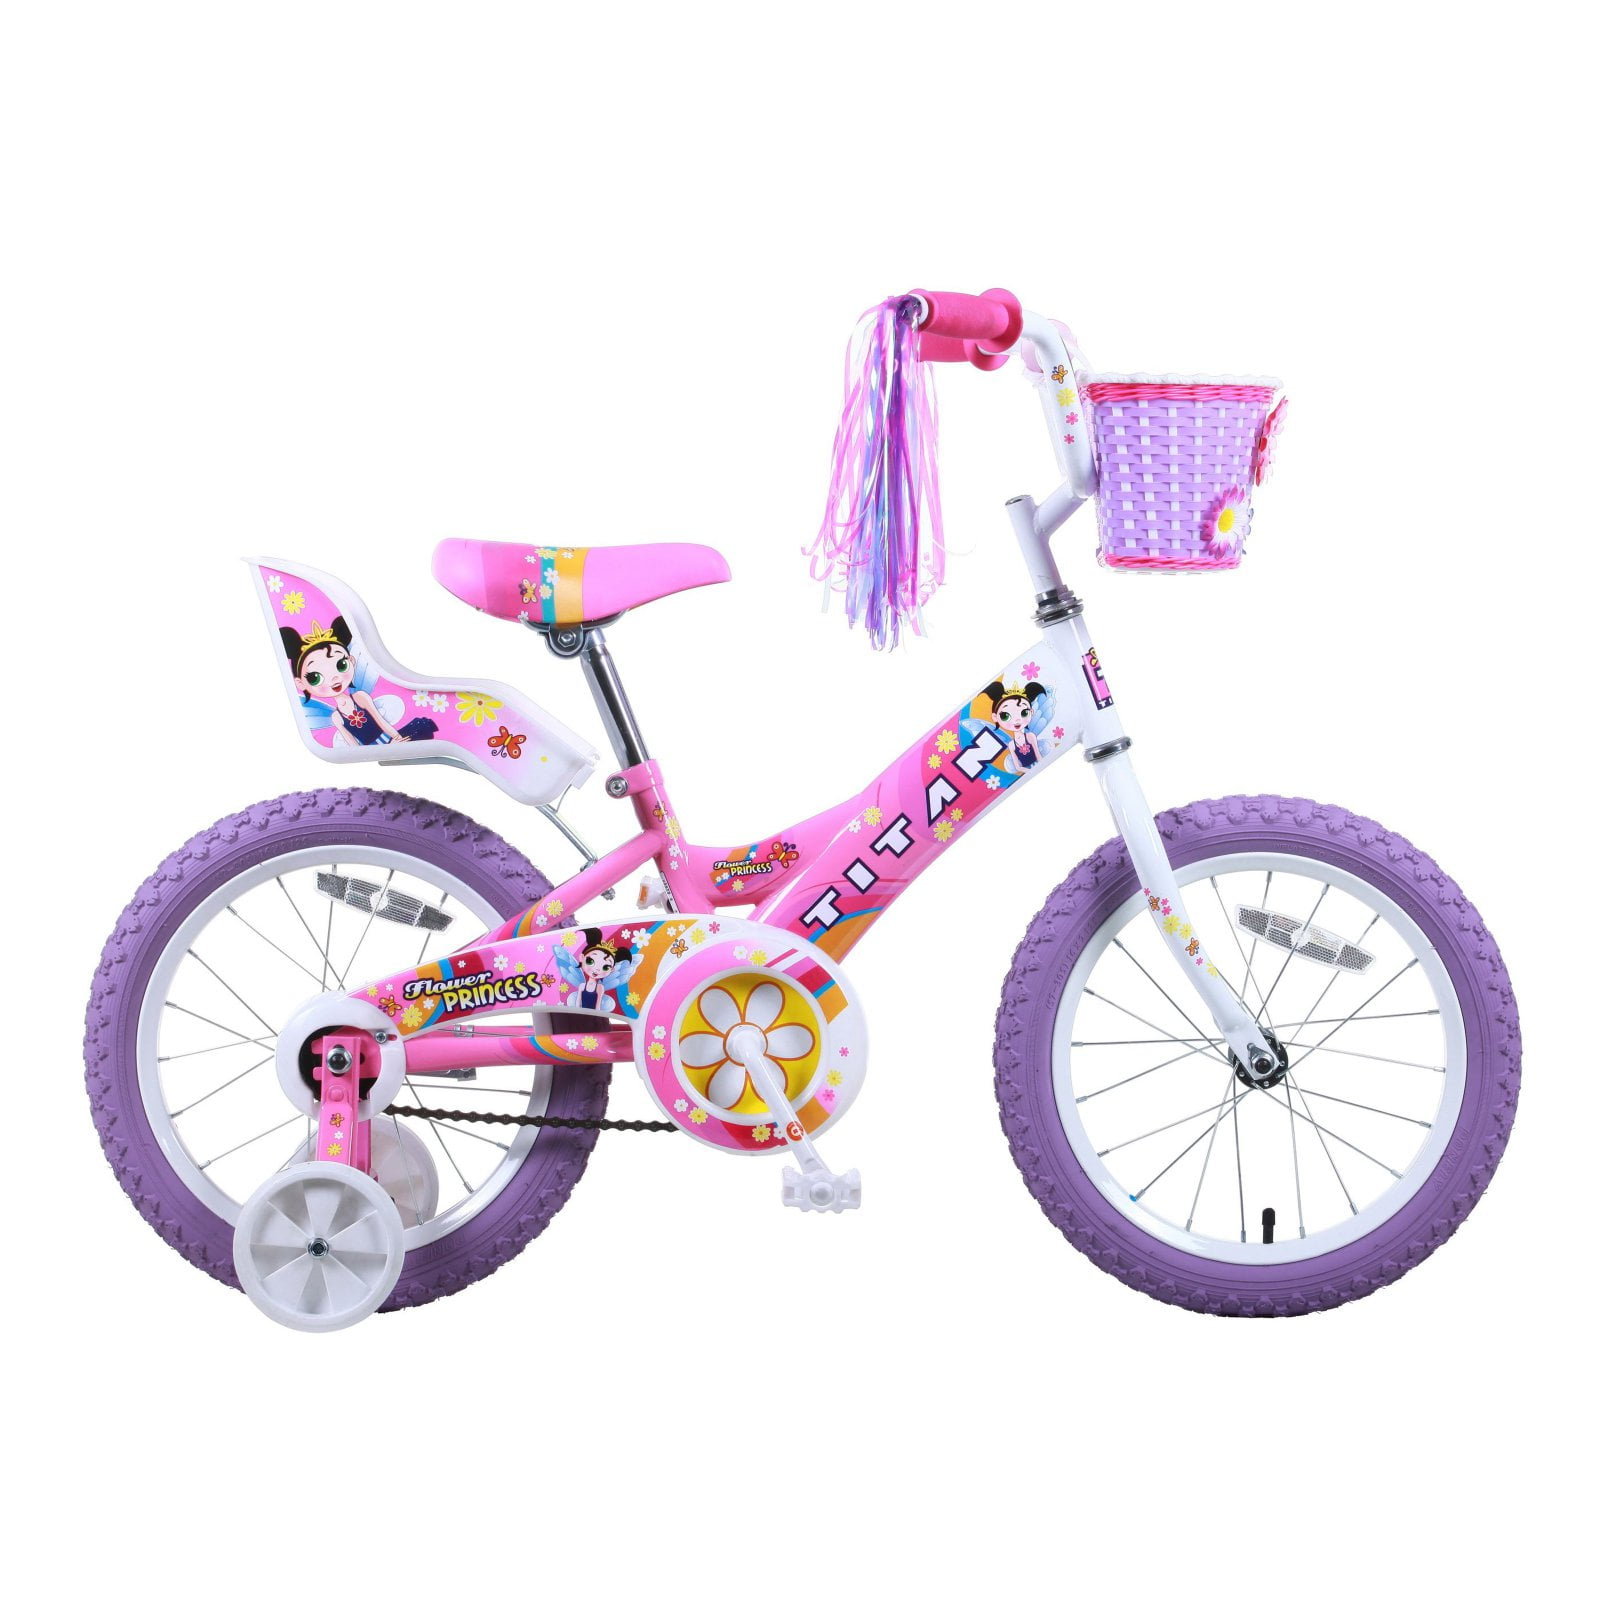 16-inch wheel girls Schwinn Bloom kids bike training wheels pink 